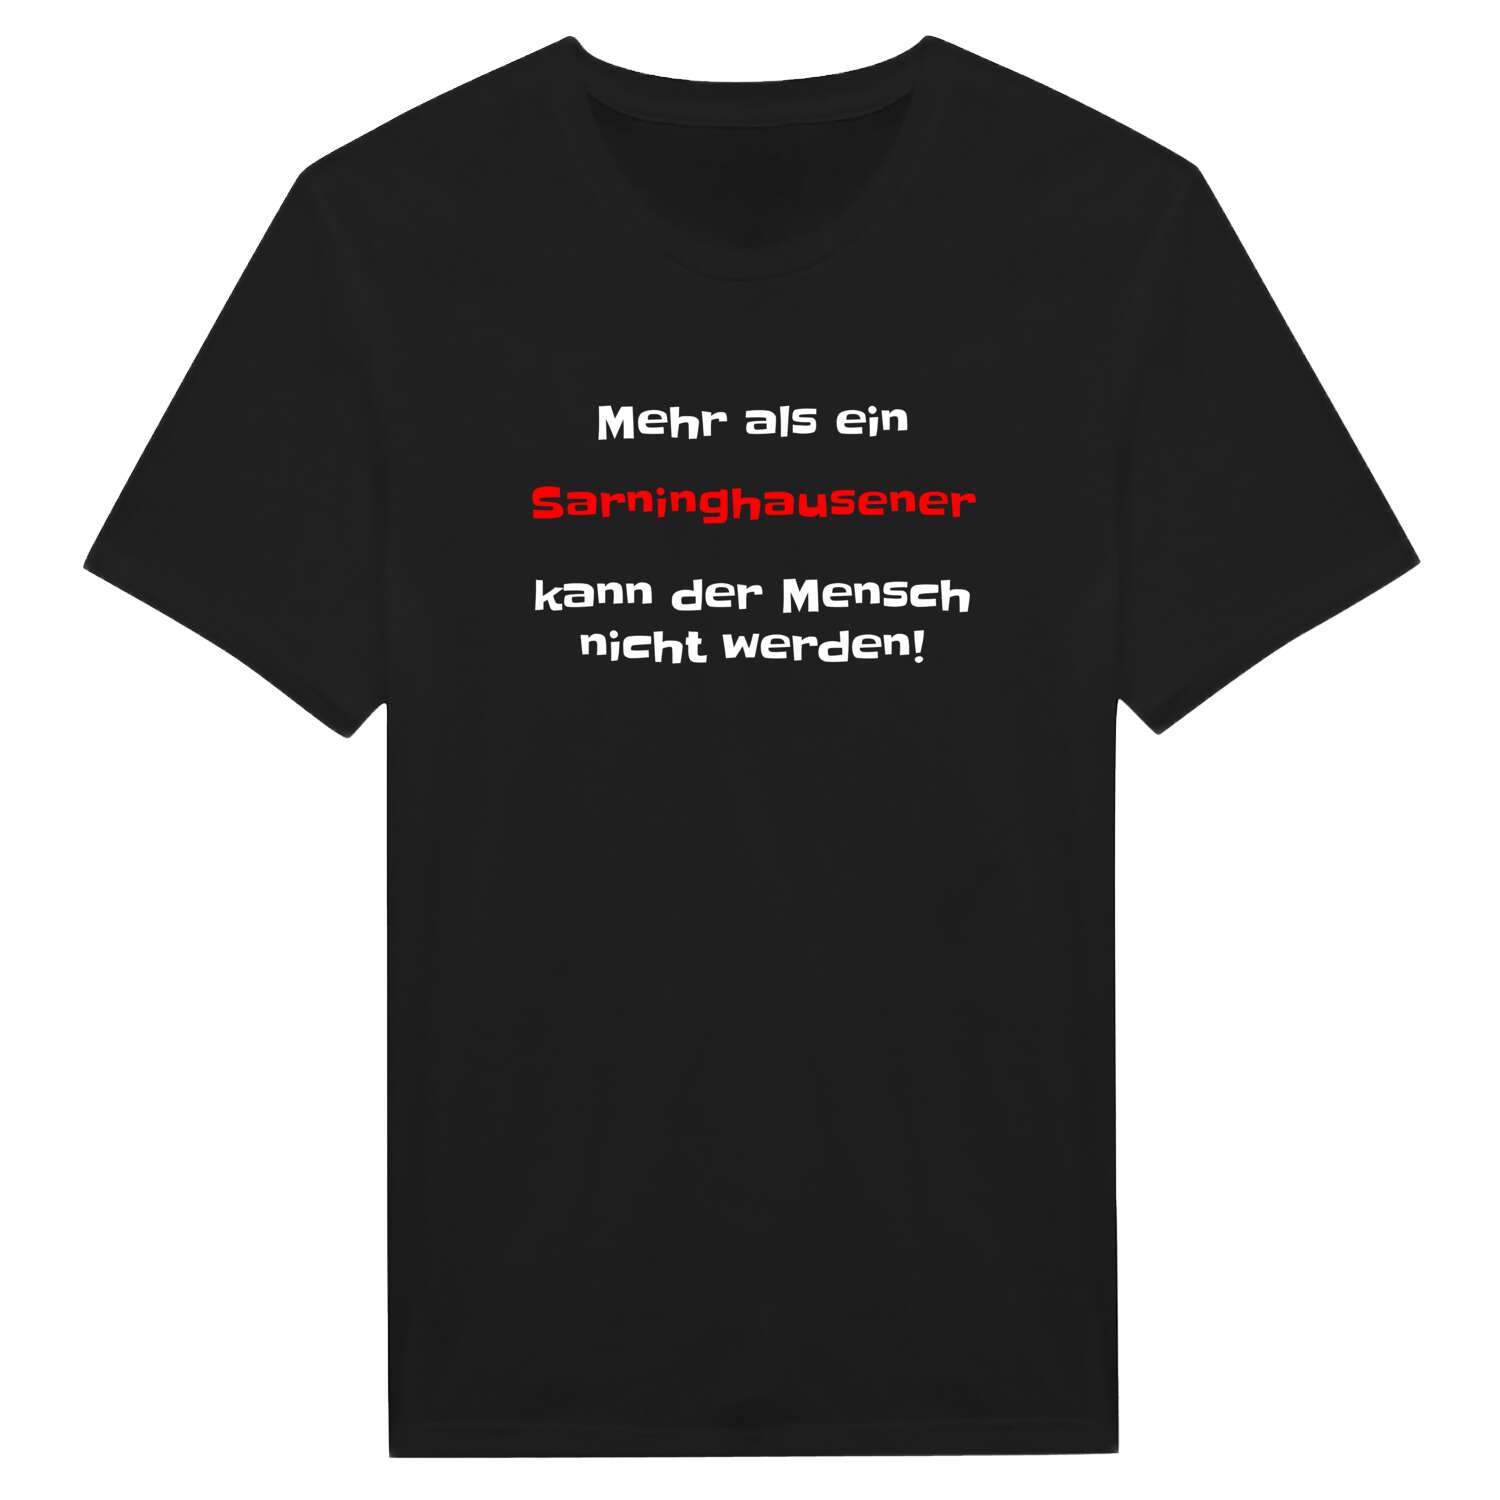 Sarninghausen T-Shirt »Mehr als ein«